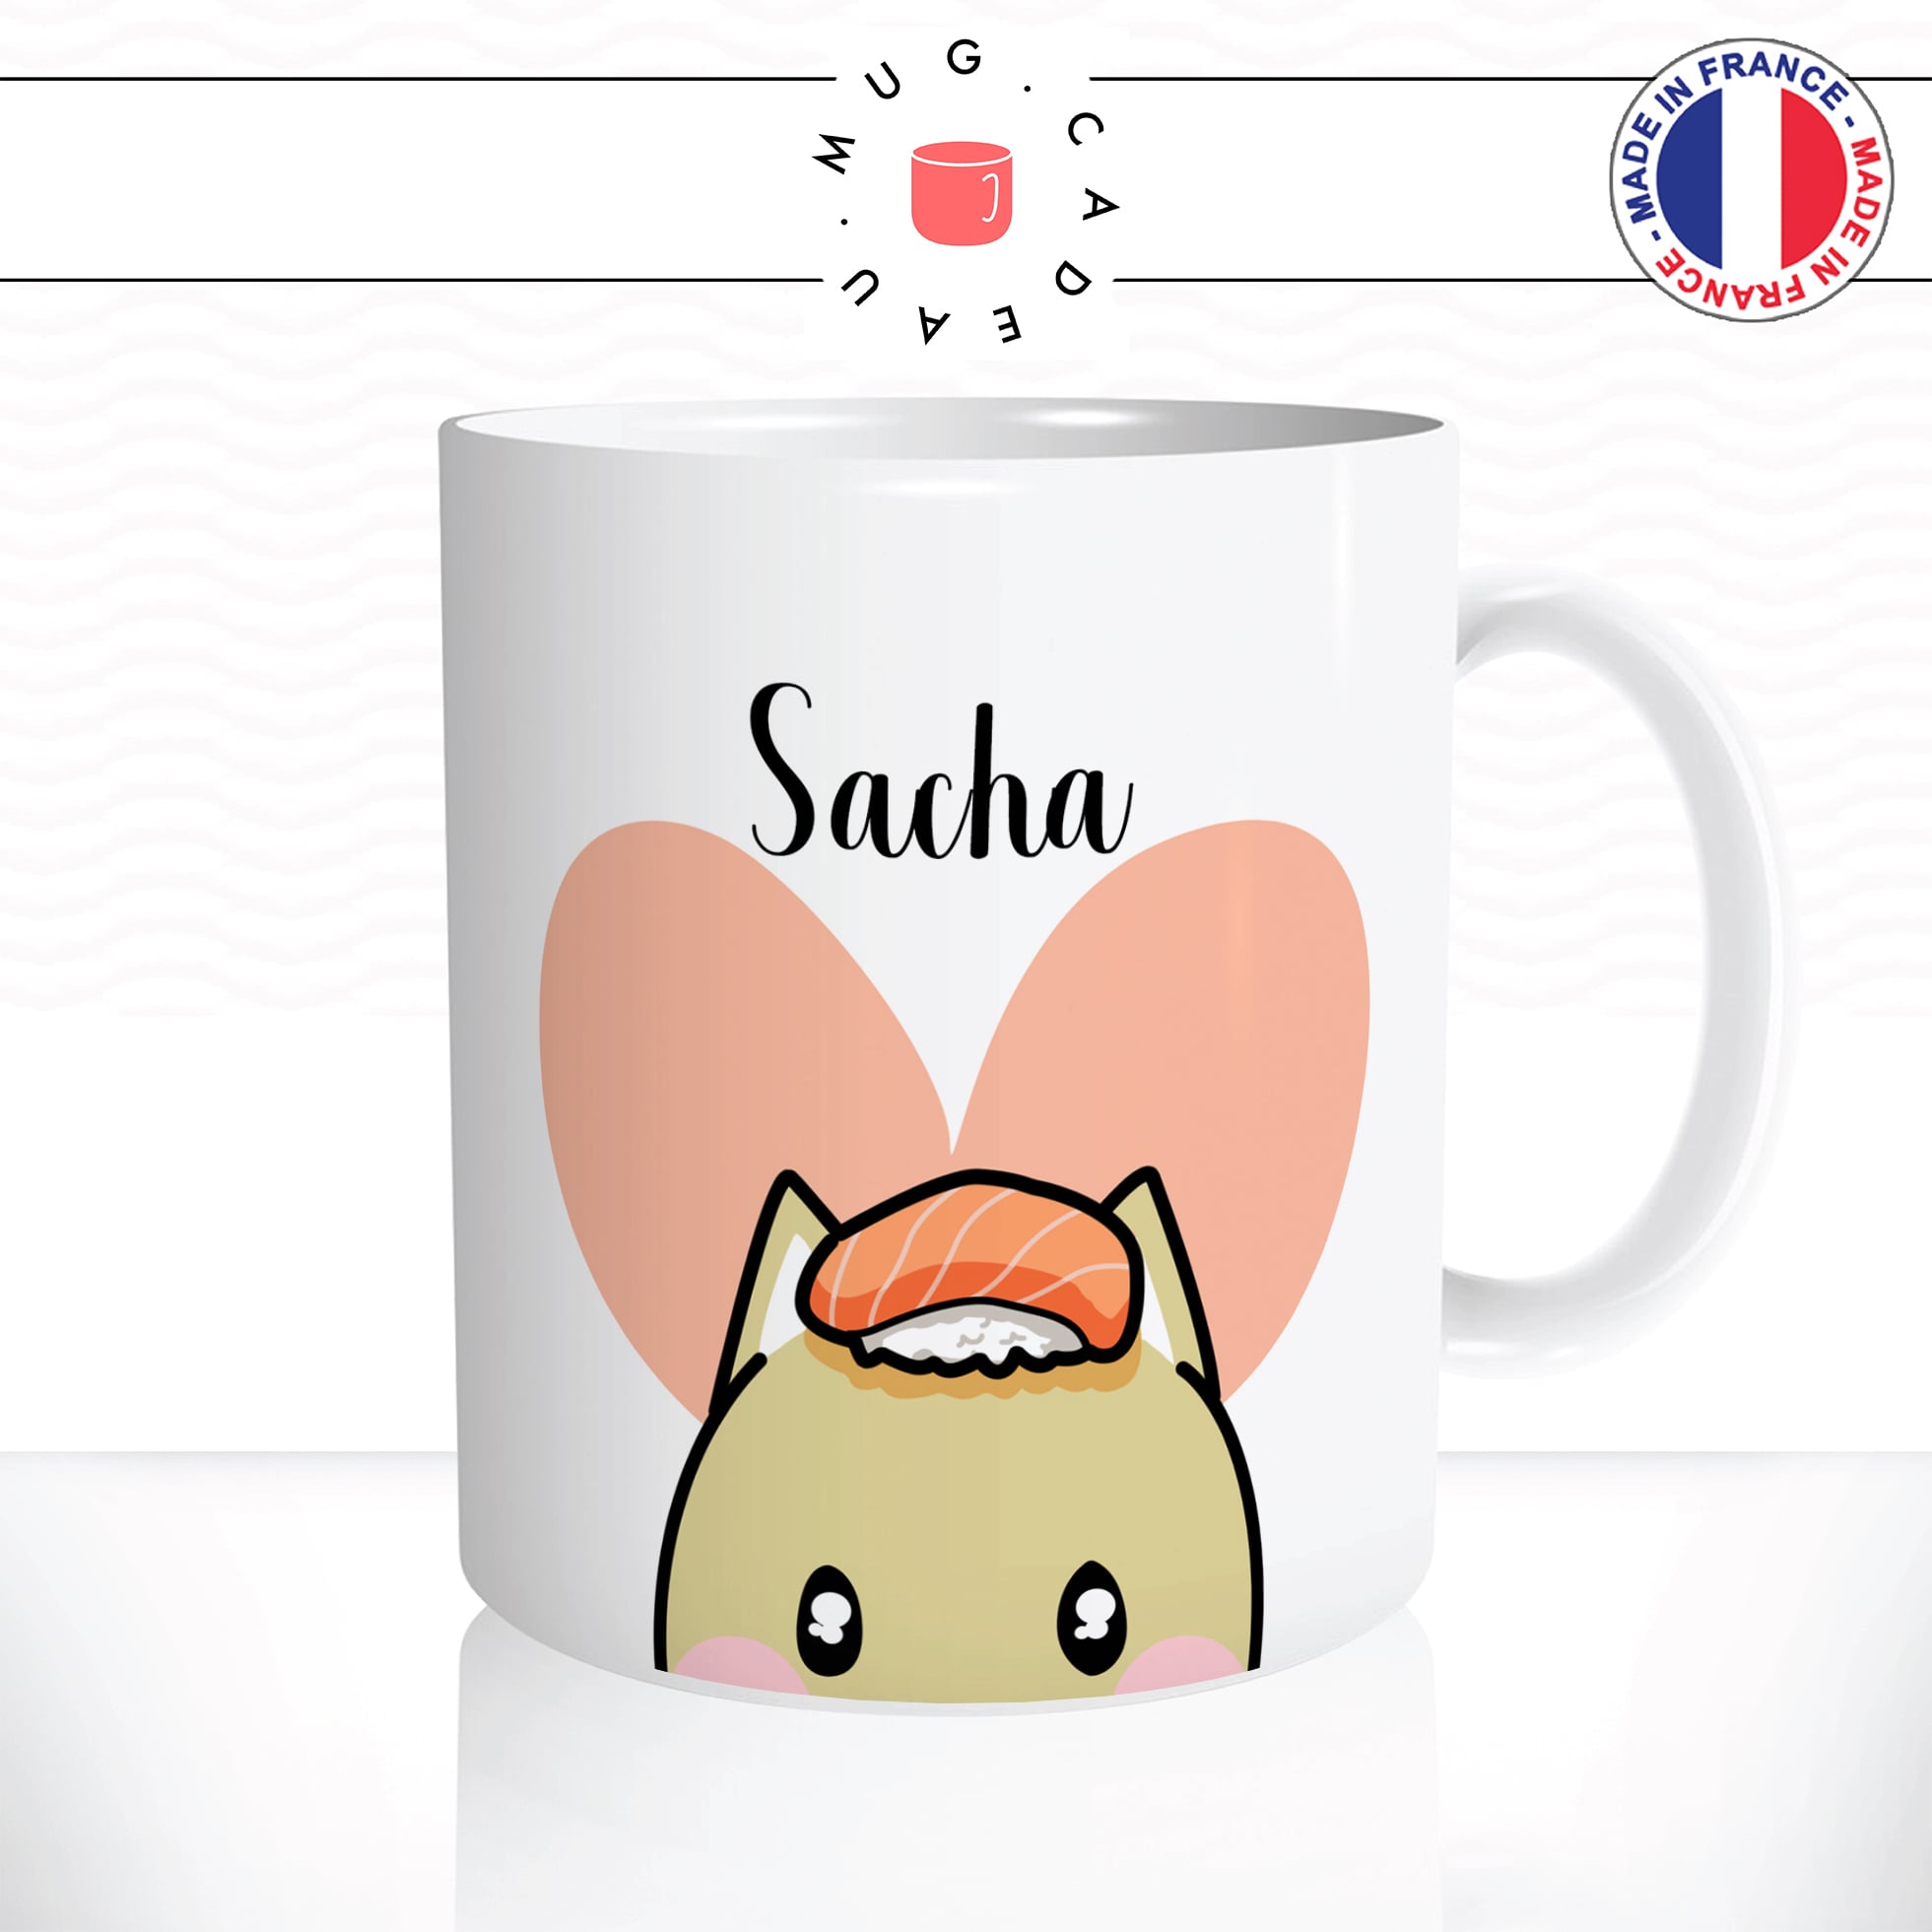 mug-tasse-chaton-chat-sushis-maki-love-japonais-saumon-riz-coeur-café-thé-humour-fun-idée-cadeau-original-prénom-personnalisable2-min